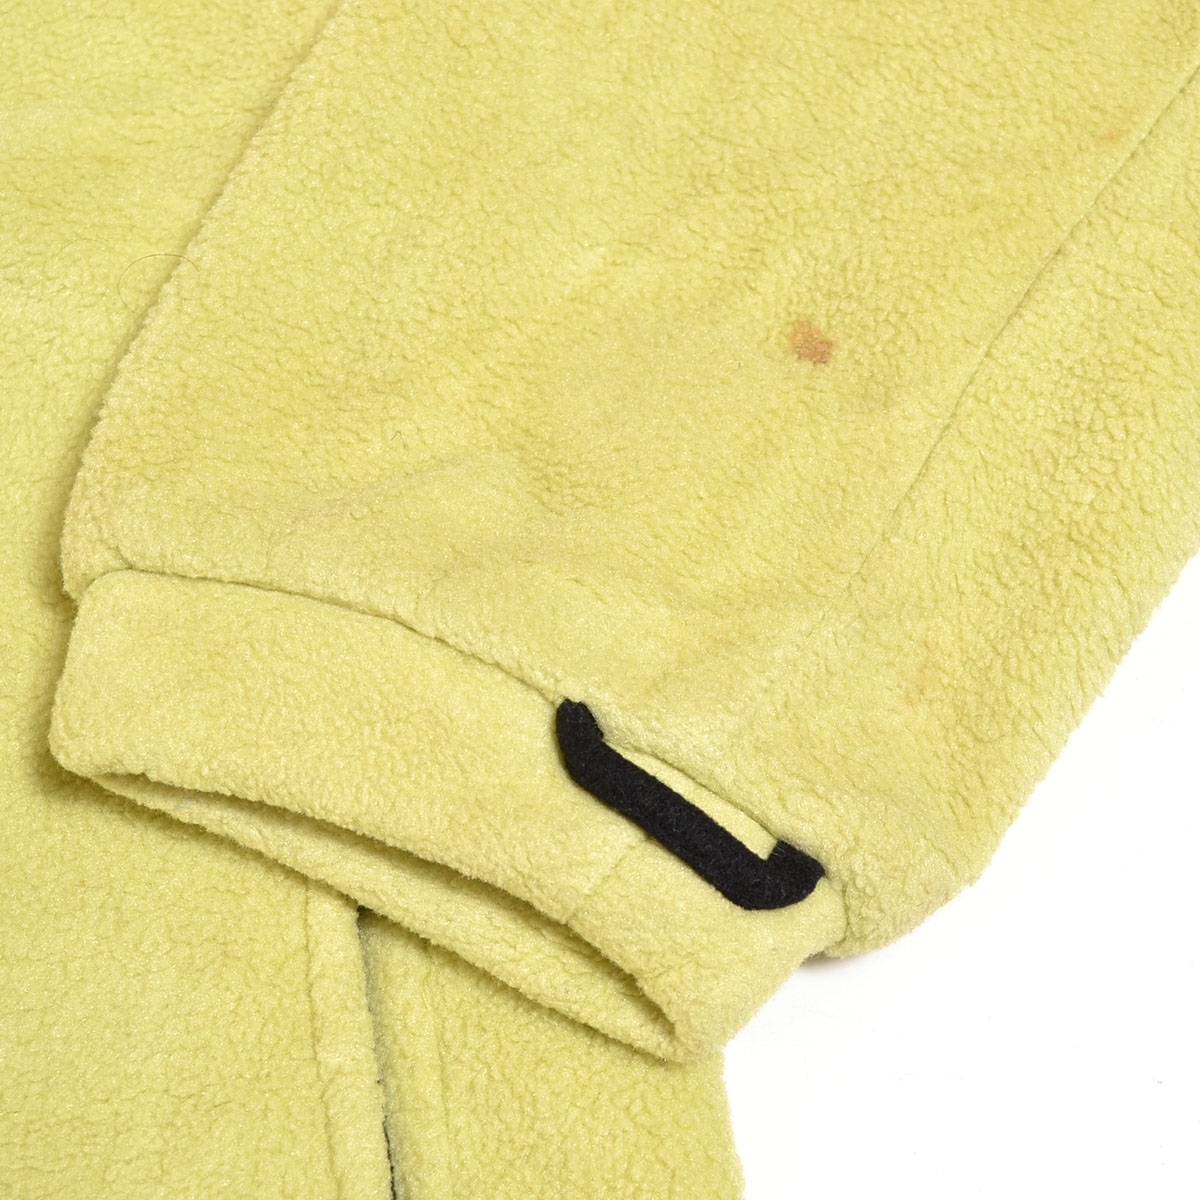 *487085 Jack Wolfskin Jack Wolfskin fleece jacket size L men's yellow 